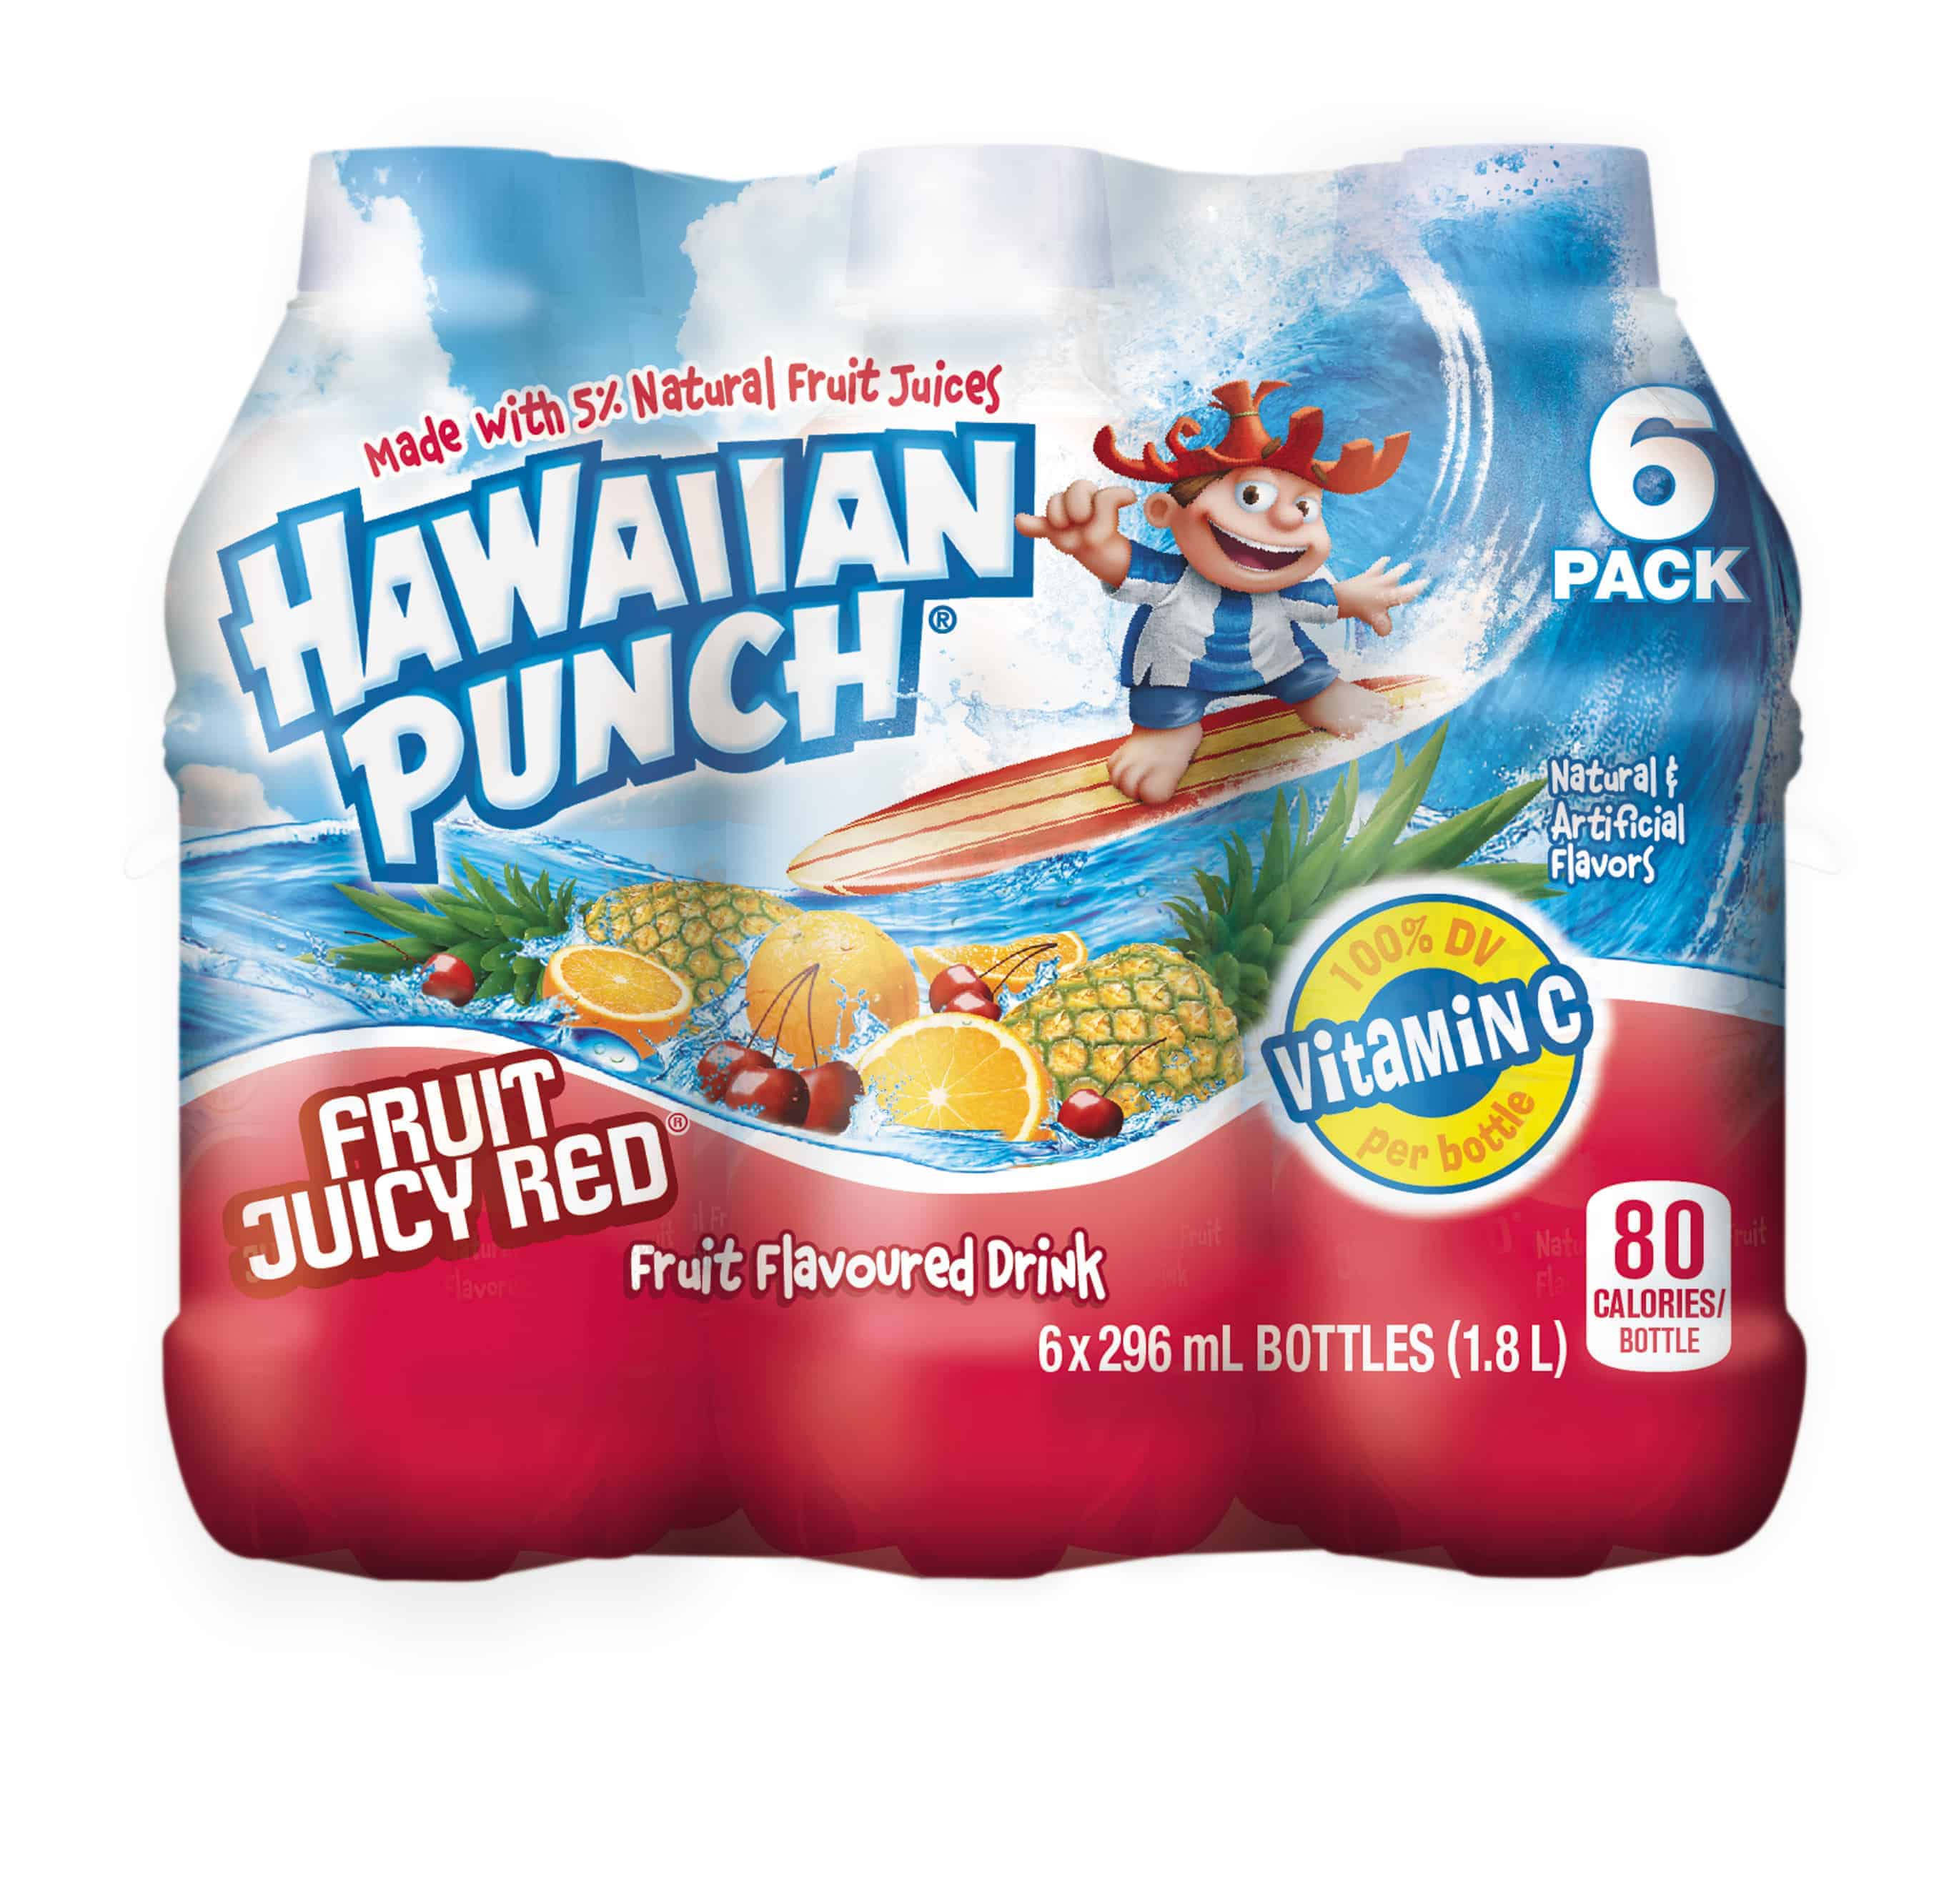 Hawaiian Punch is now in Canada!